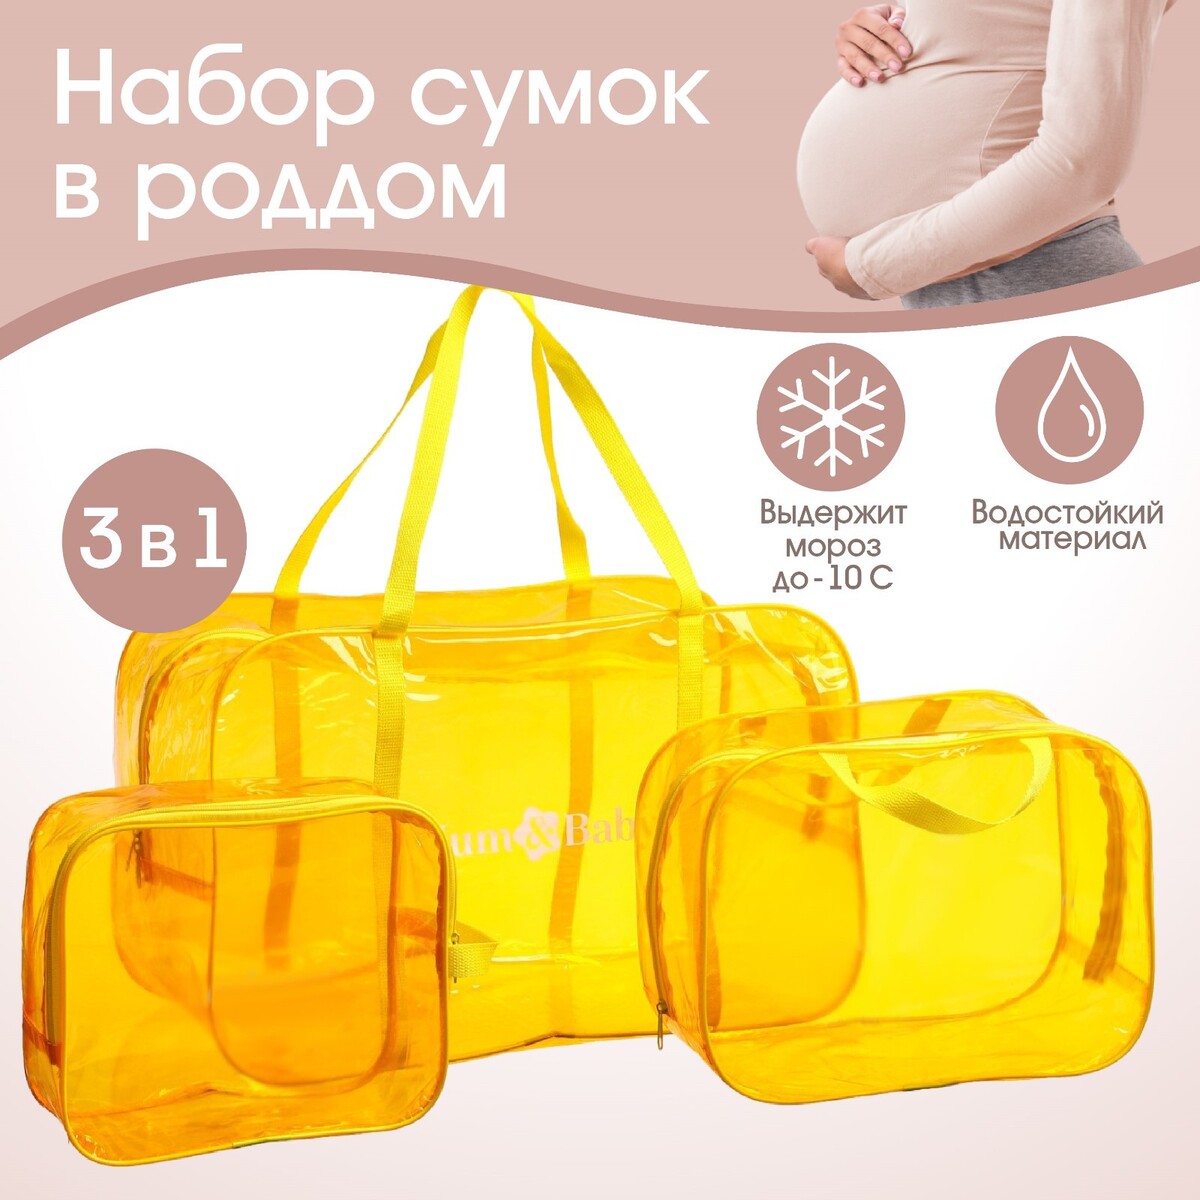 фото Набор сумок в роддом, 3 шт., цветной пвх, цвет желтый mum&baby